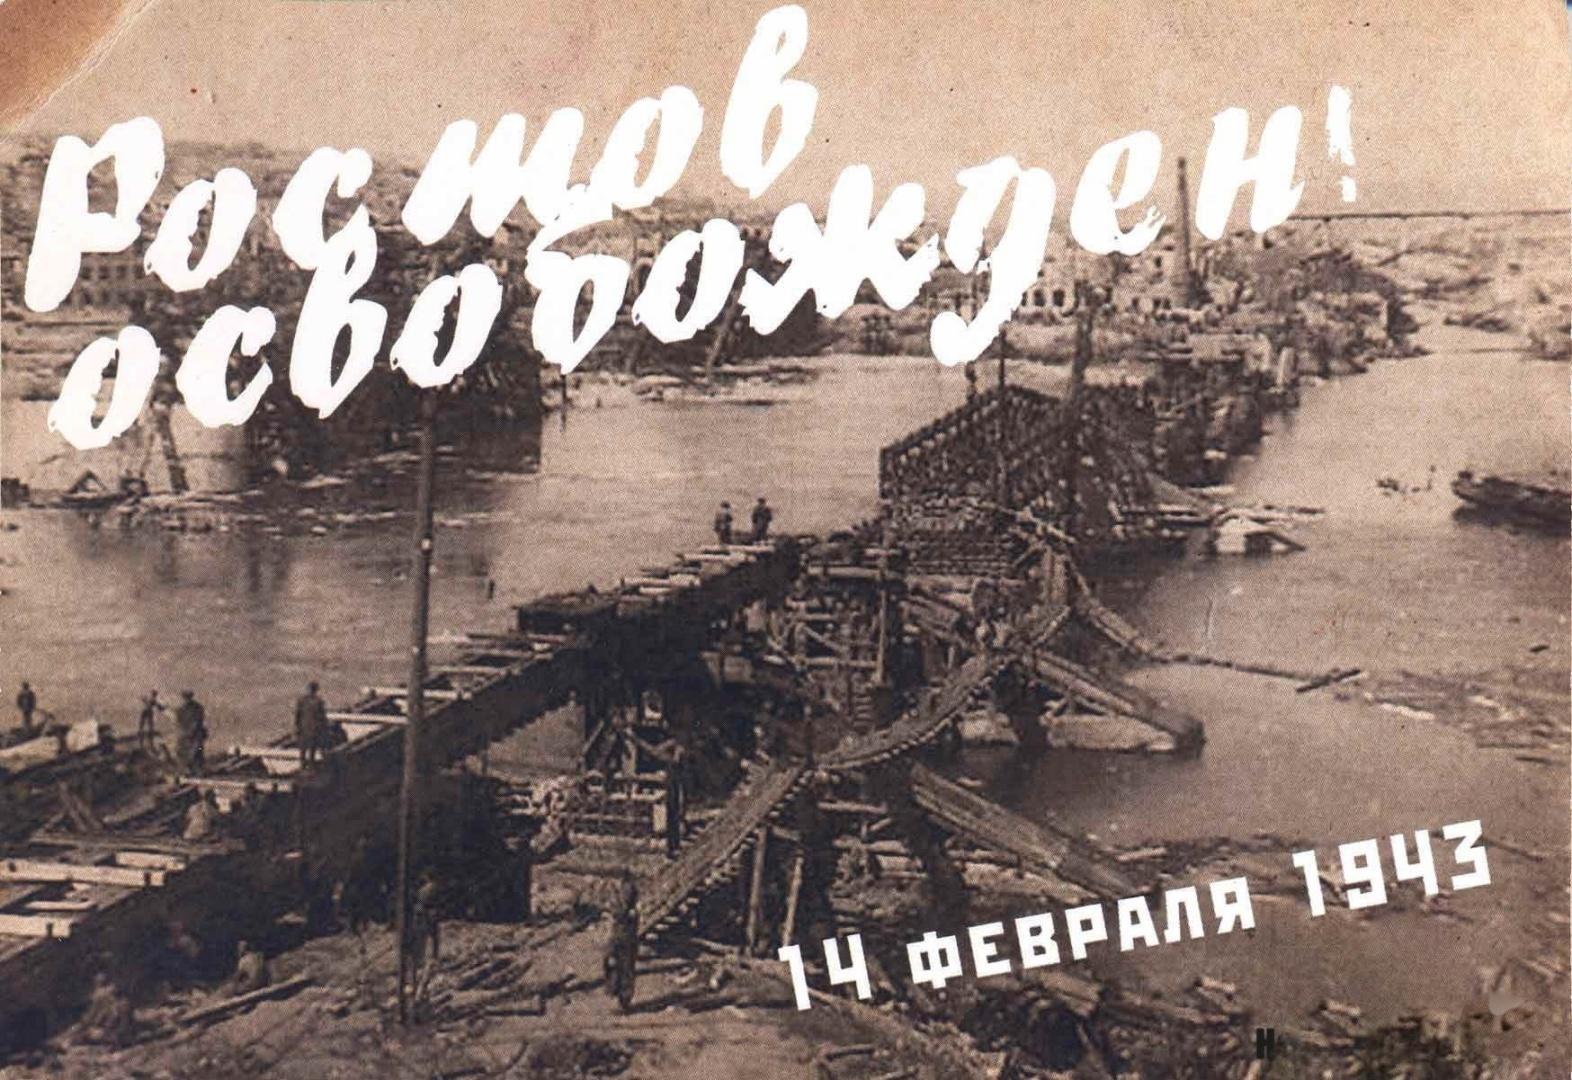 Освобождение Ростова 14 февраля 1943